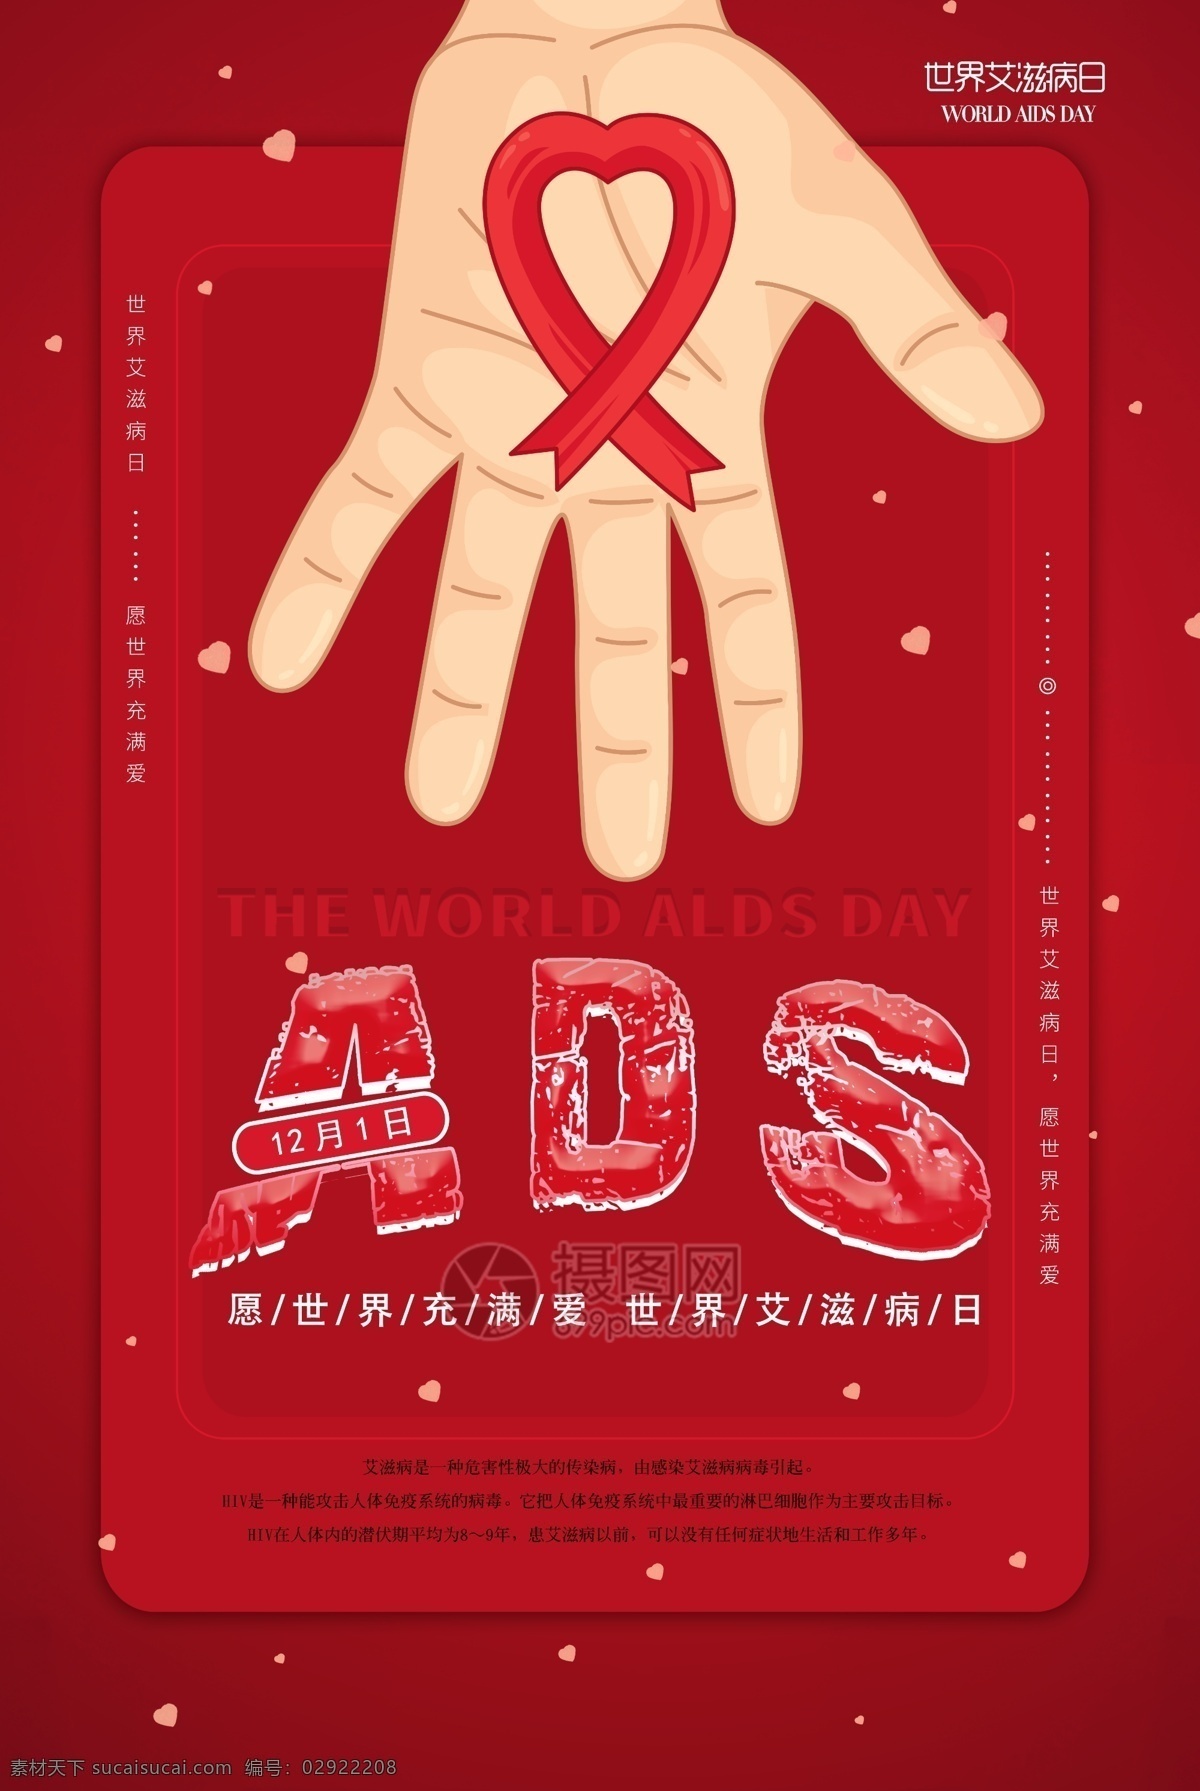 大红色 世界 艾滋病 日 公益 海报 世界艾滋病日 关爱 为爱发声 手 珍爱生命 12月1日 防止艾滋病日 活动 爱心